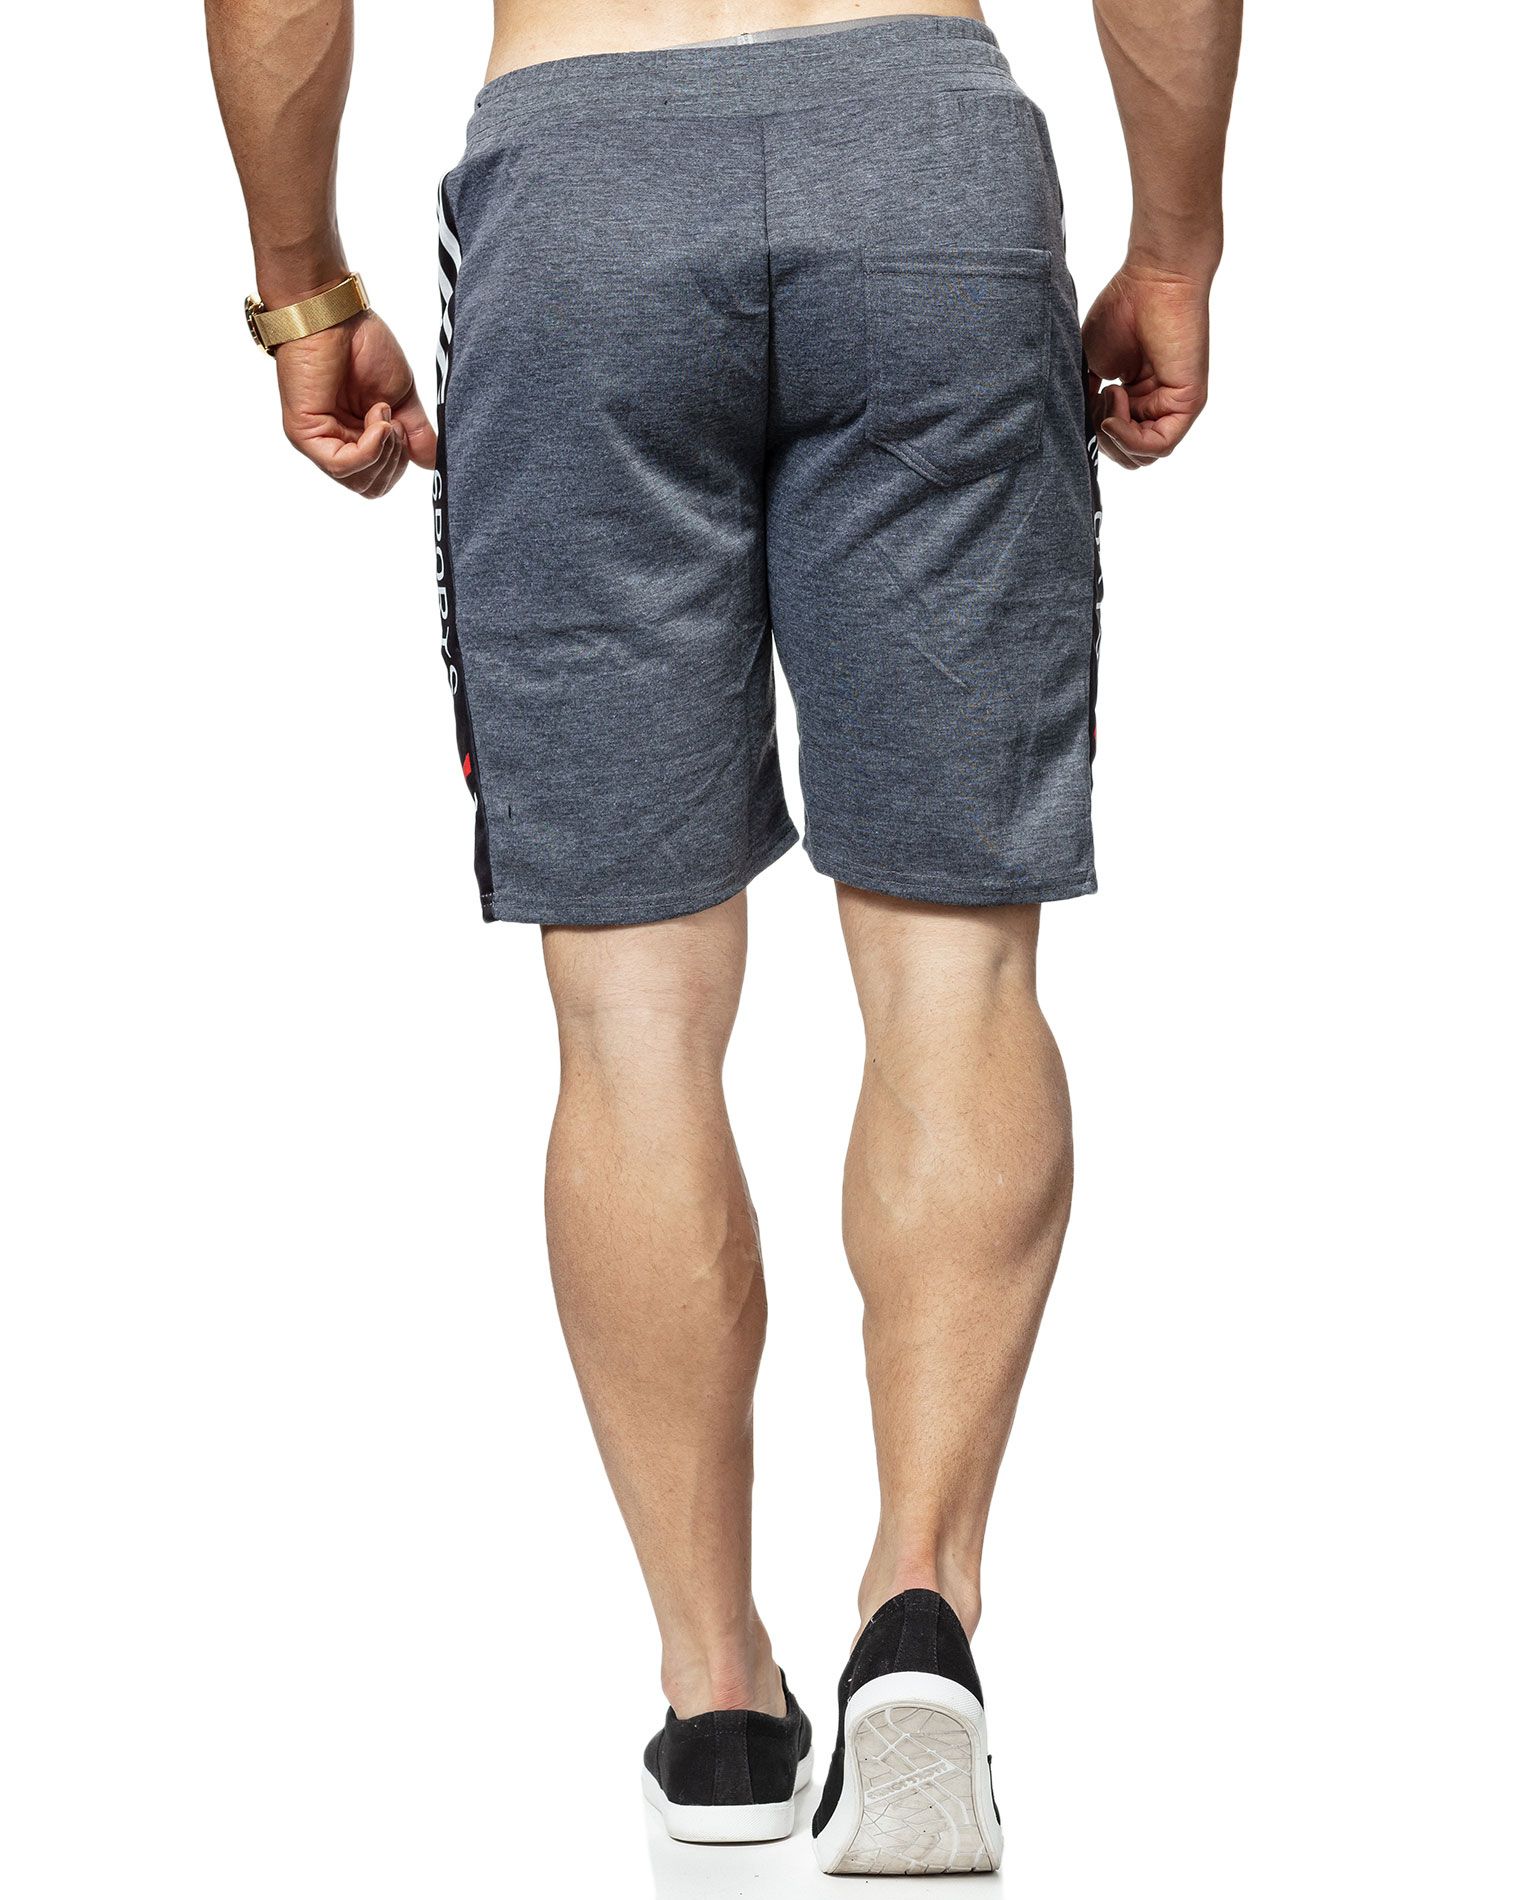 Palary Shorts Light Grey Jerone - 2818 - Shorts - Jerone.com